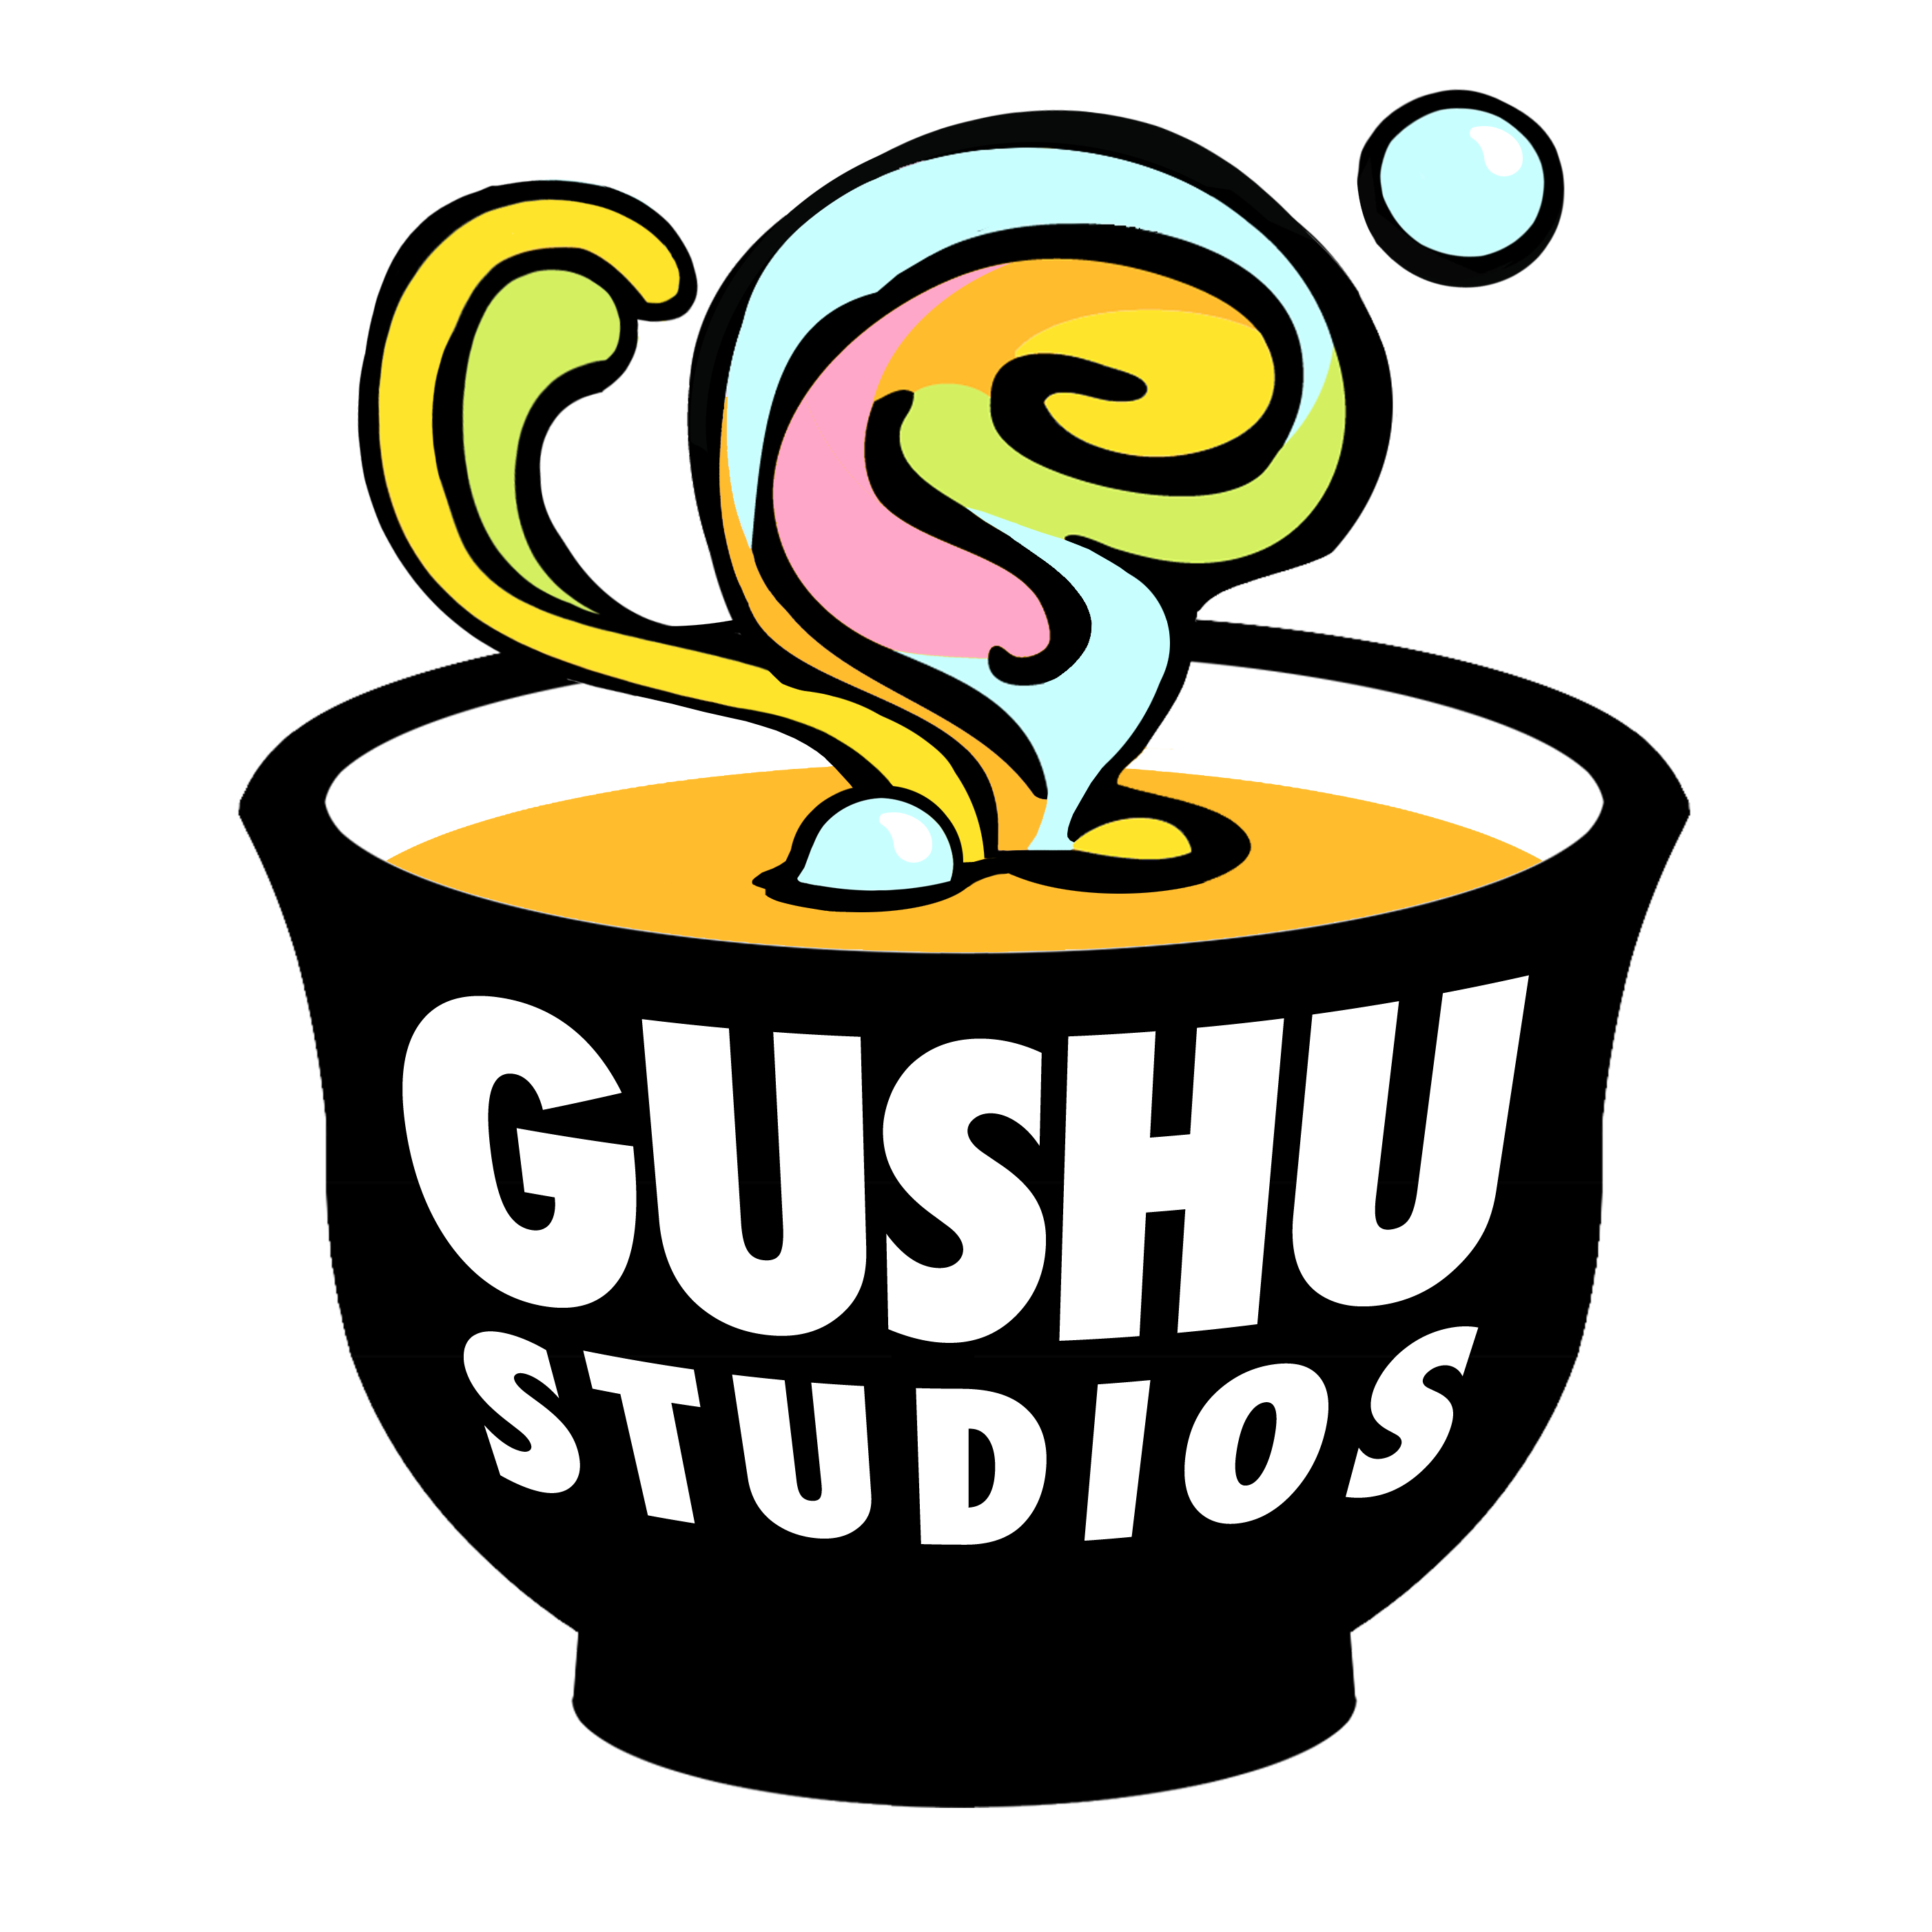 Gushu Studios